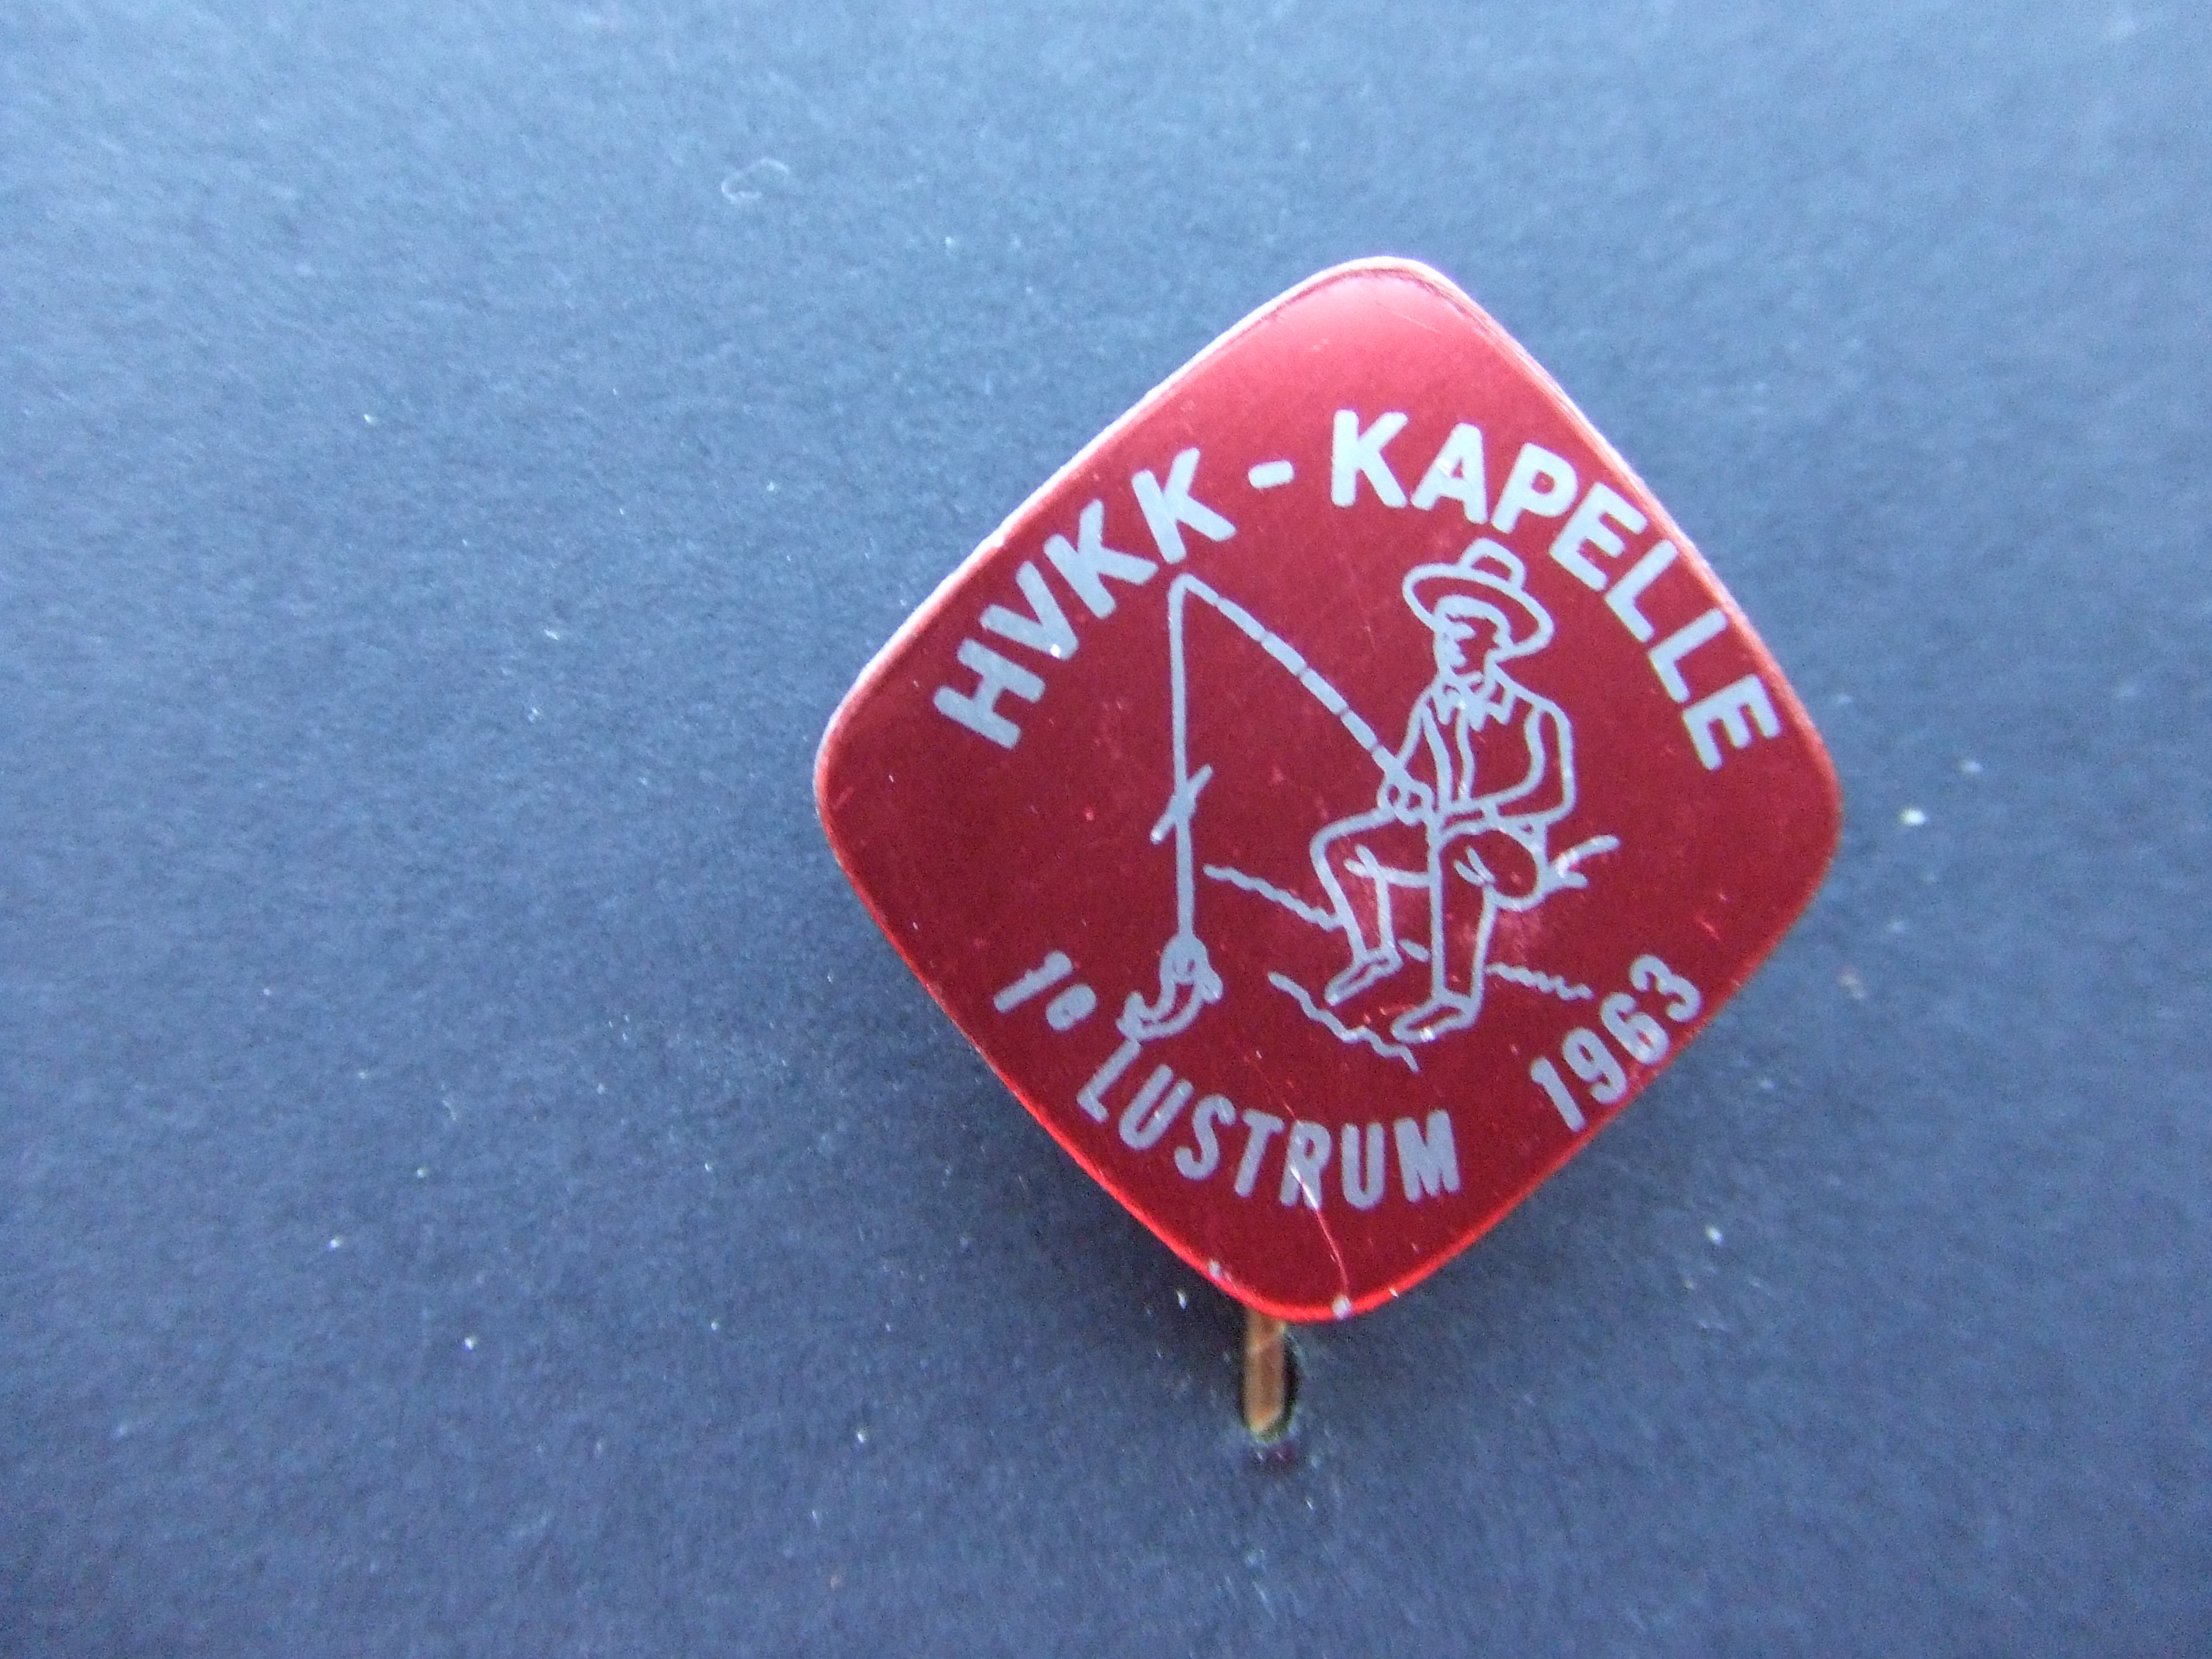 Hengelsport vereniging HVKK - Kapelle 1e lustrum 1963